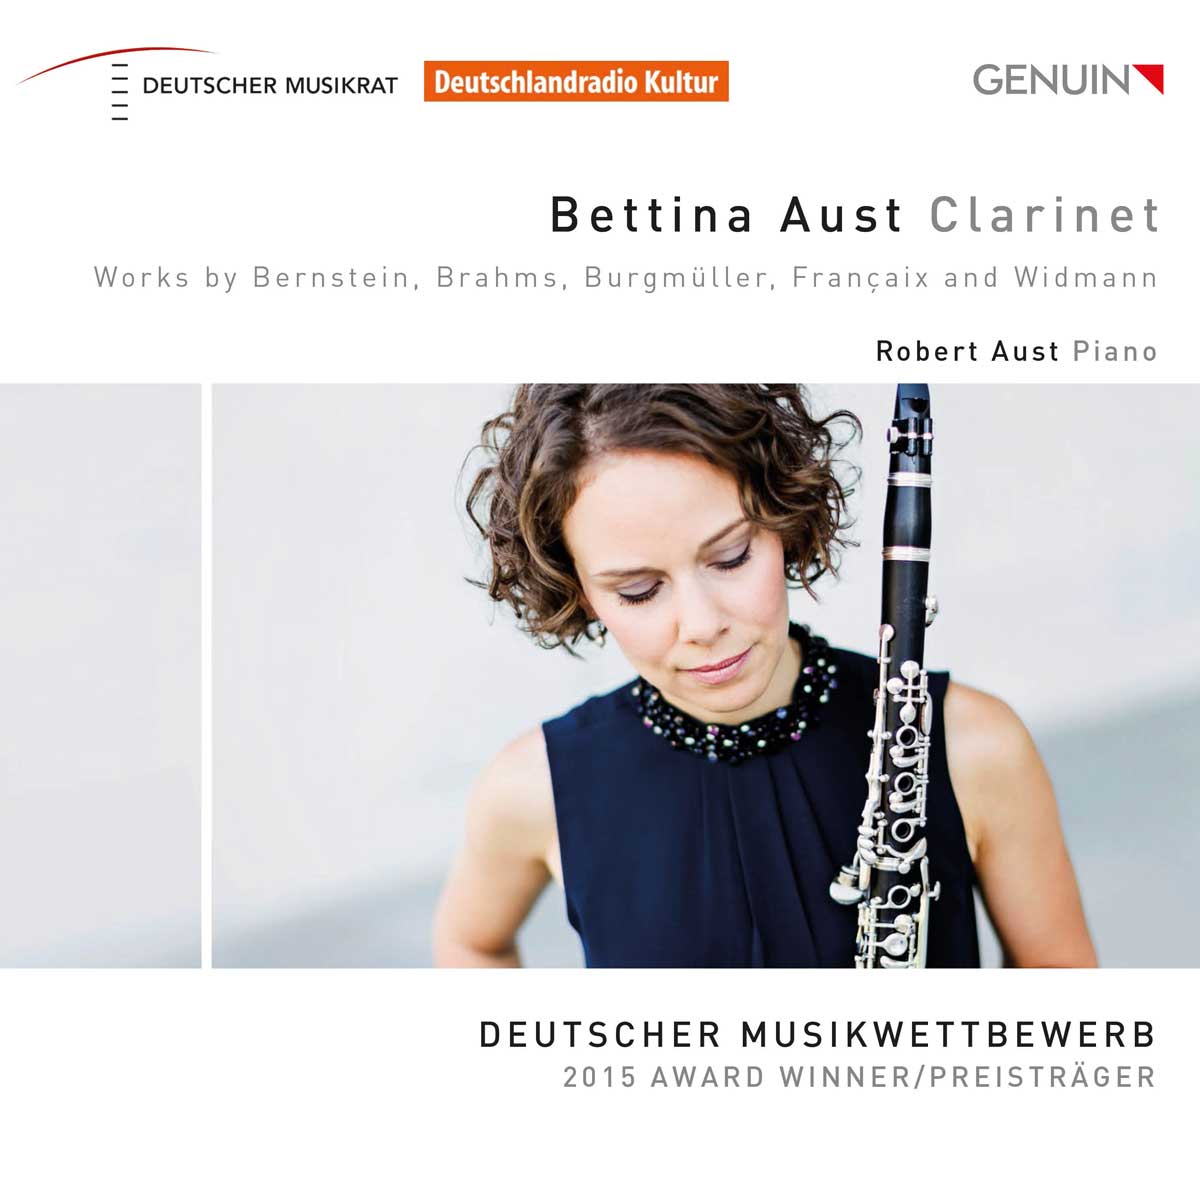 CD album cover 'Bettina Aust, Clarinet' (GEN 16432) with Bettina Aust, Robert Aust